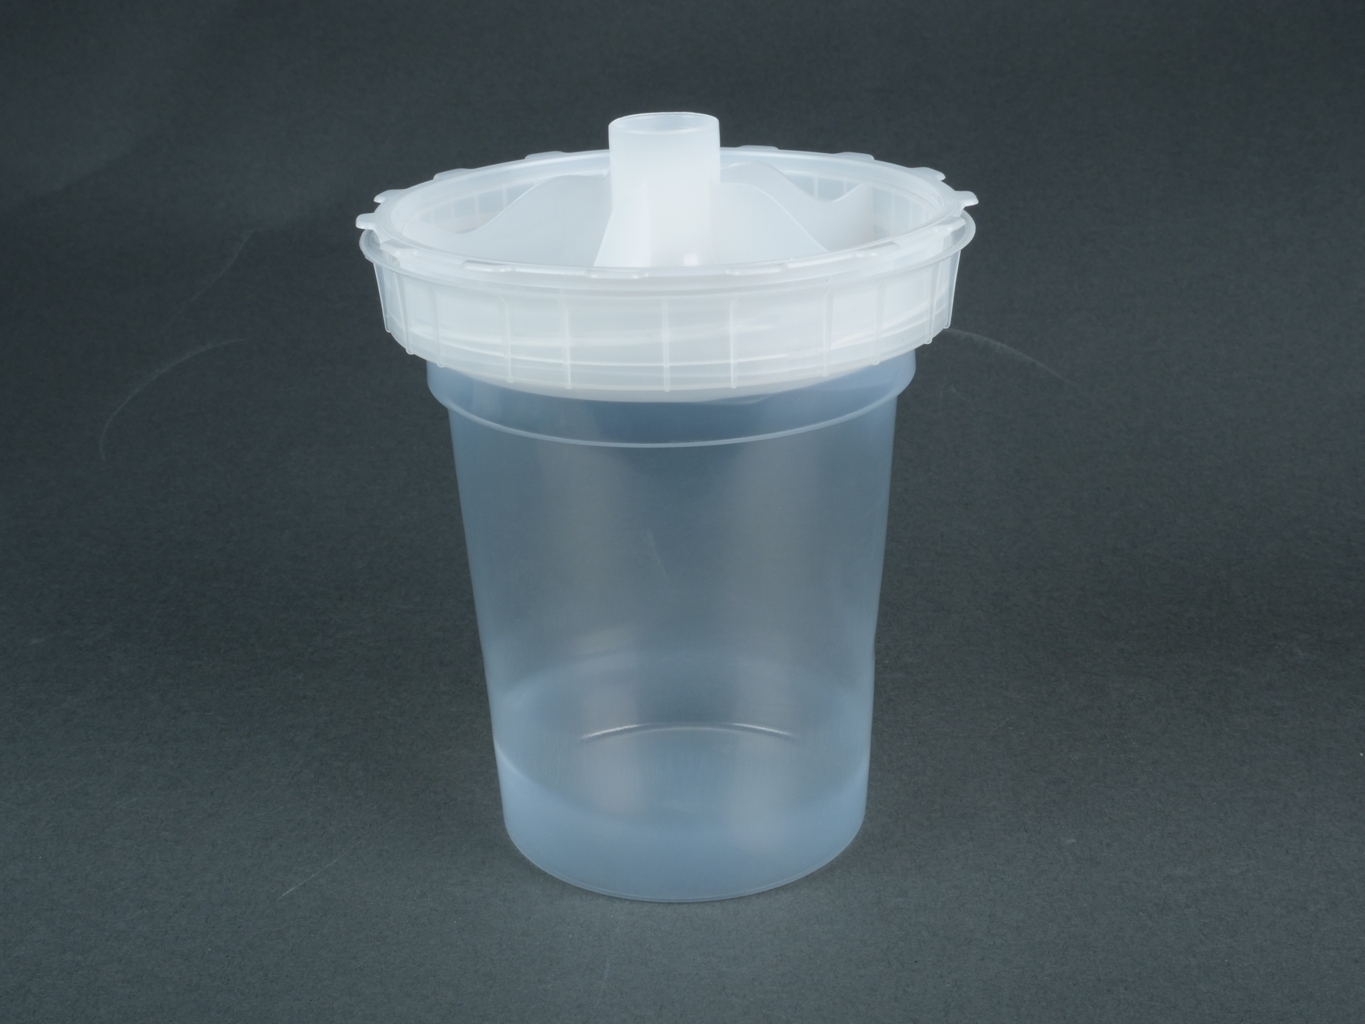 Одноразовый пластиковый стакан с крышкой со встроенным ситечком 190 мкм  FLEXI-CUP 45шт. в упаковке 1 шт.  JETA PRO 5861009